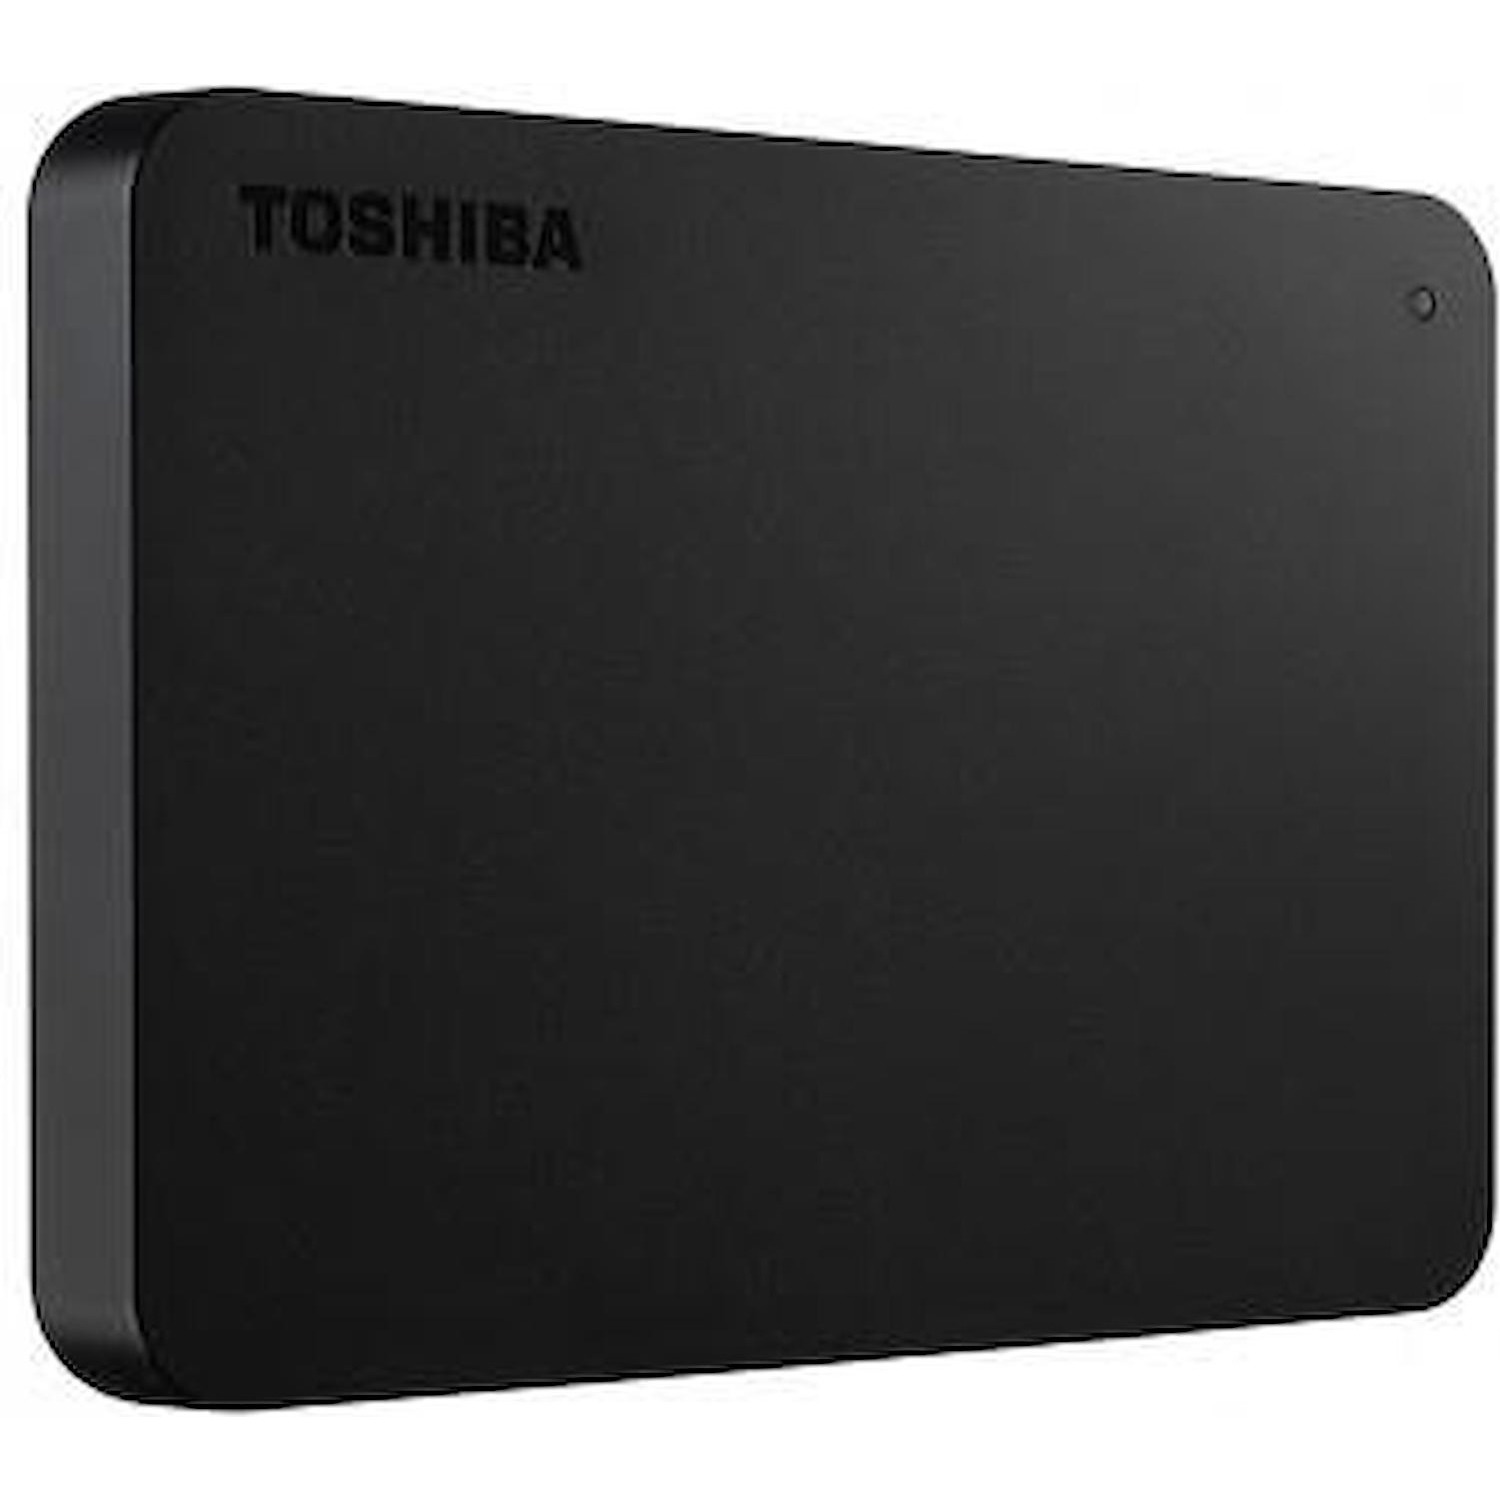 Immagine per HD Toshiba 1TB esterno canvio basics USB 3.0 nero 2,5" da DIMOStore